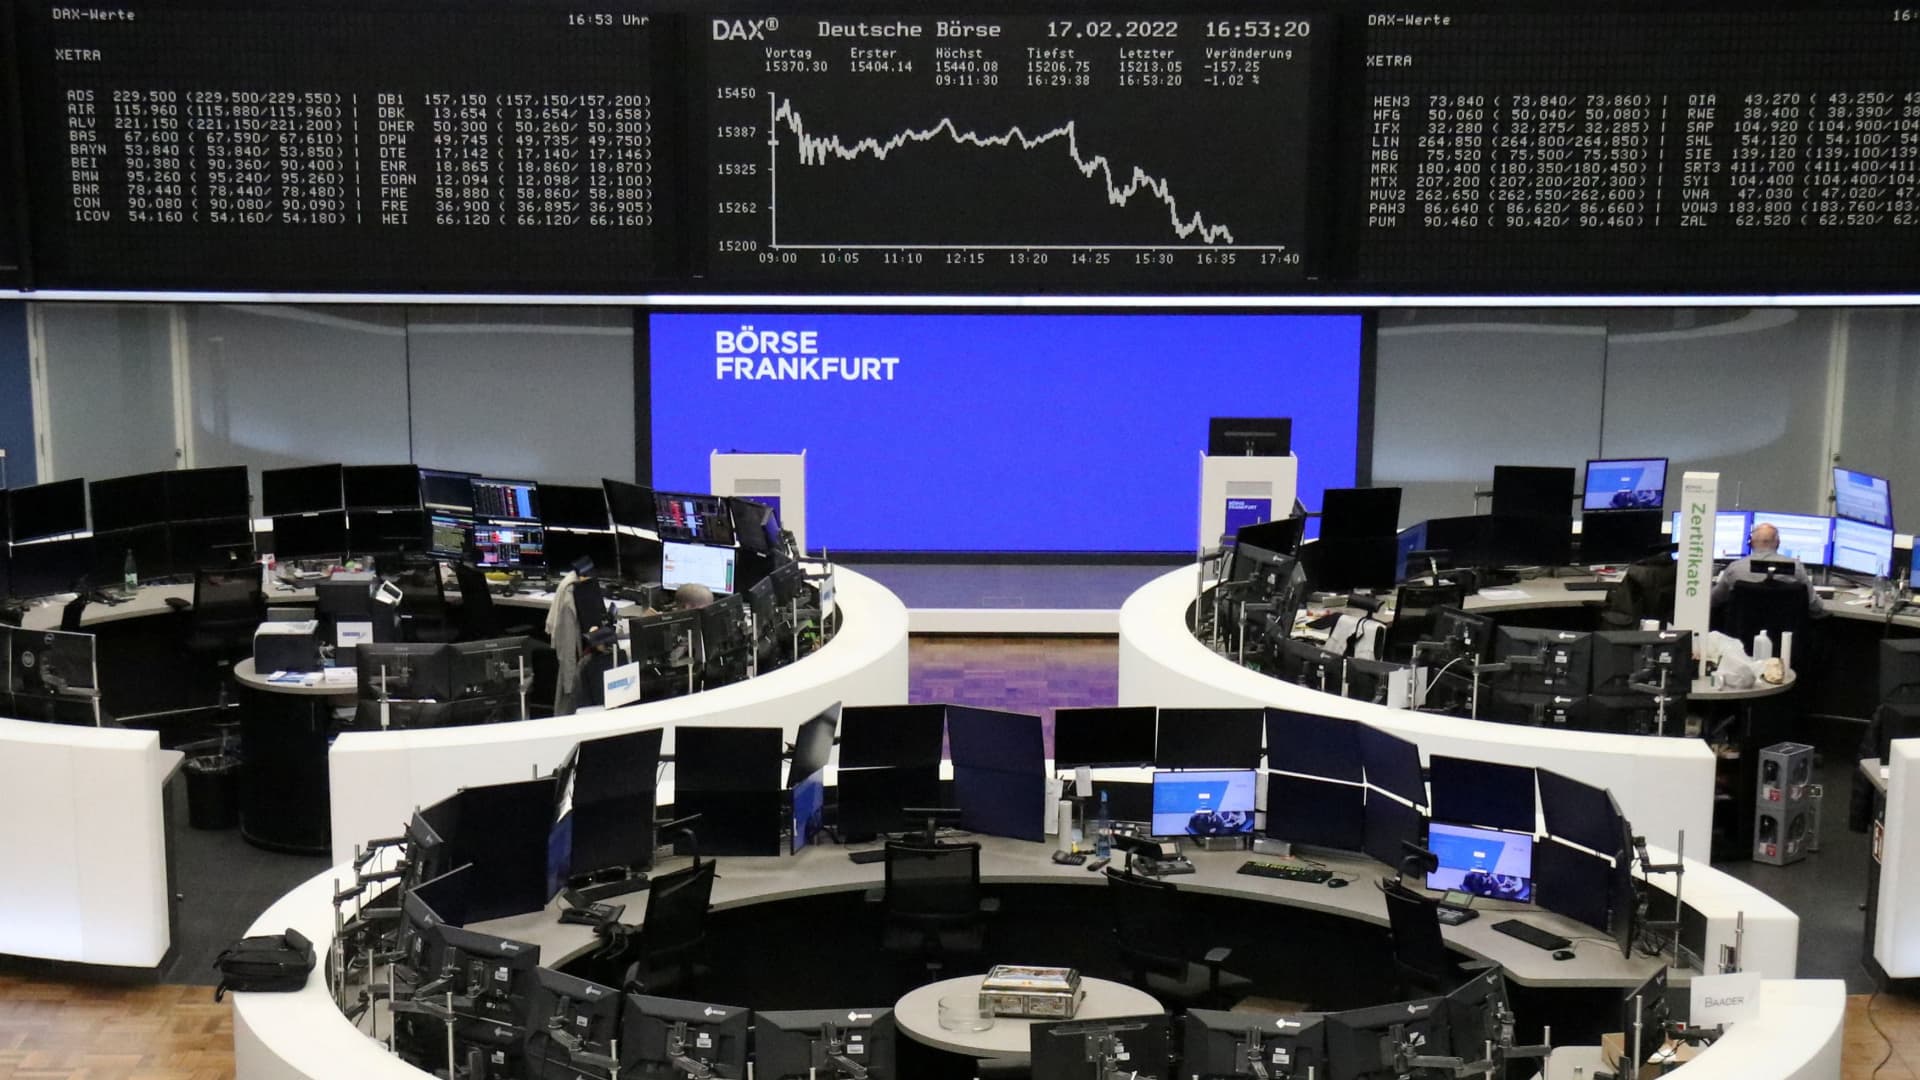 European markets open higher, rebounding as investors weigh Fed risks